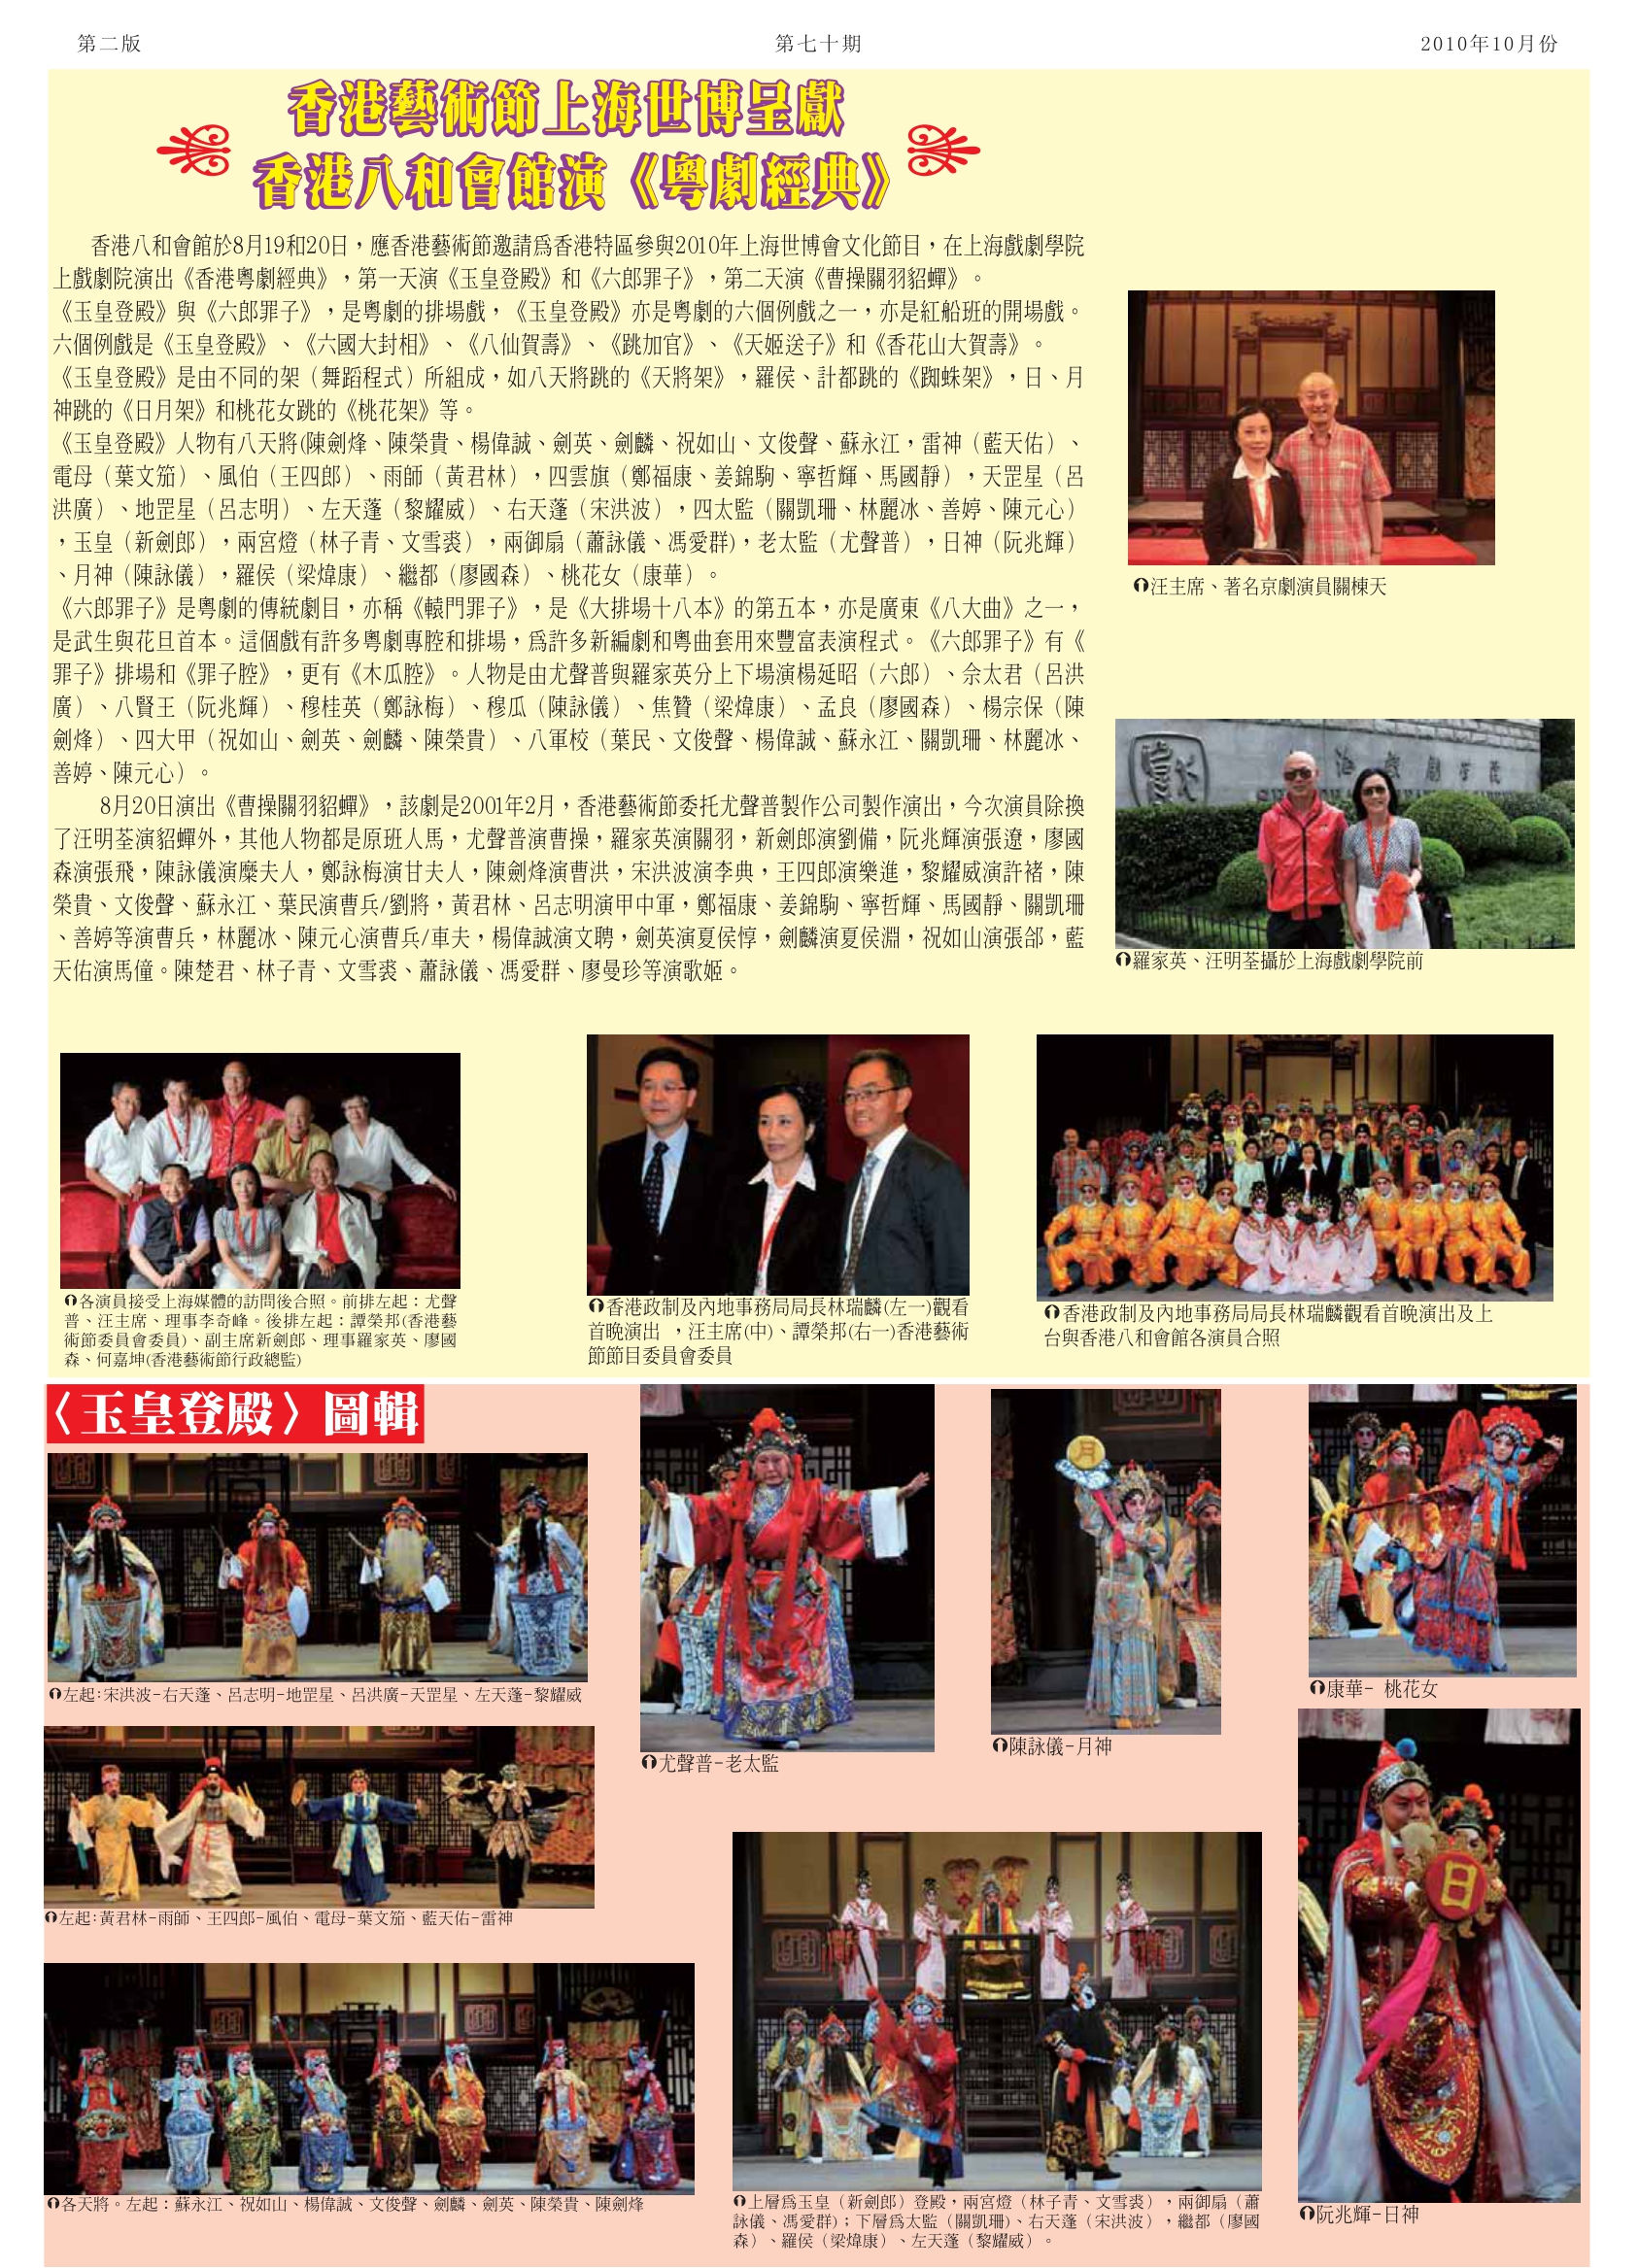 香港藝術節上海世博呈獻 香港八和會館演《粵劇經典》：《玉皇登殿》圖輯